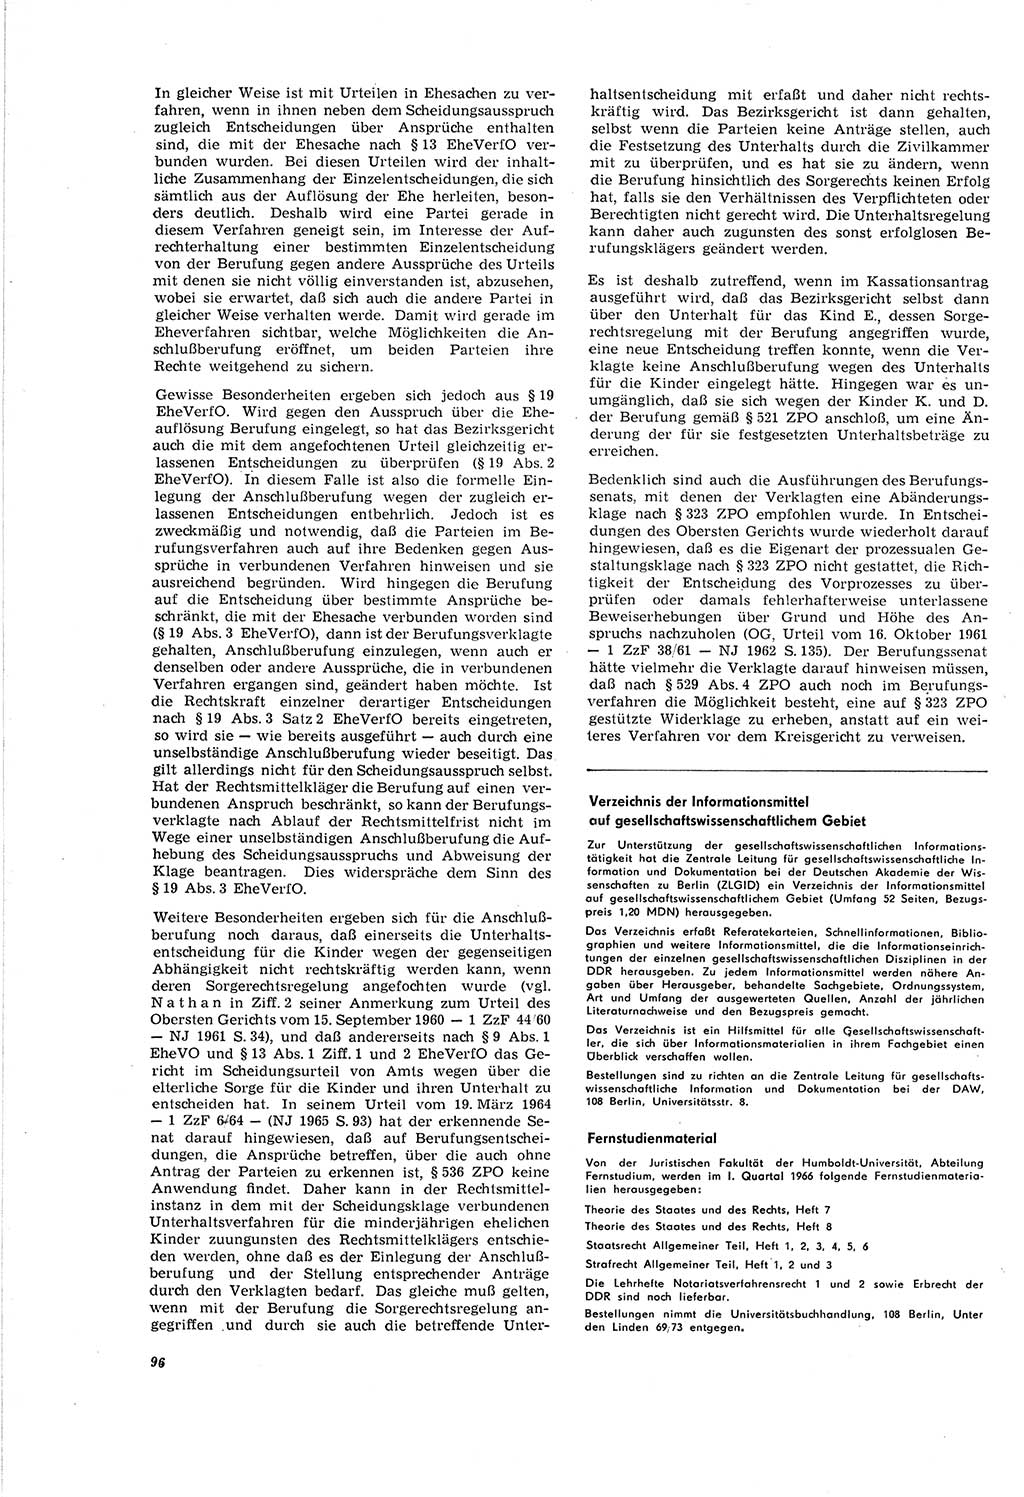 Neue Justiz (NJ), Zeitschrift für Recht und Rechtswissenschaft [Deutsche Demokratische Republik (DDR)], 20. Jahrgang 1966, Seite 96 (NJ DDR 1966, S. 96)